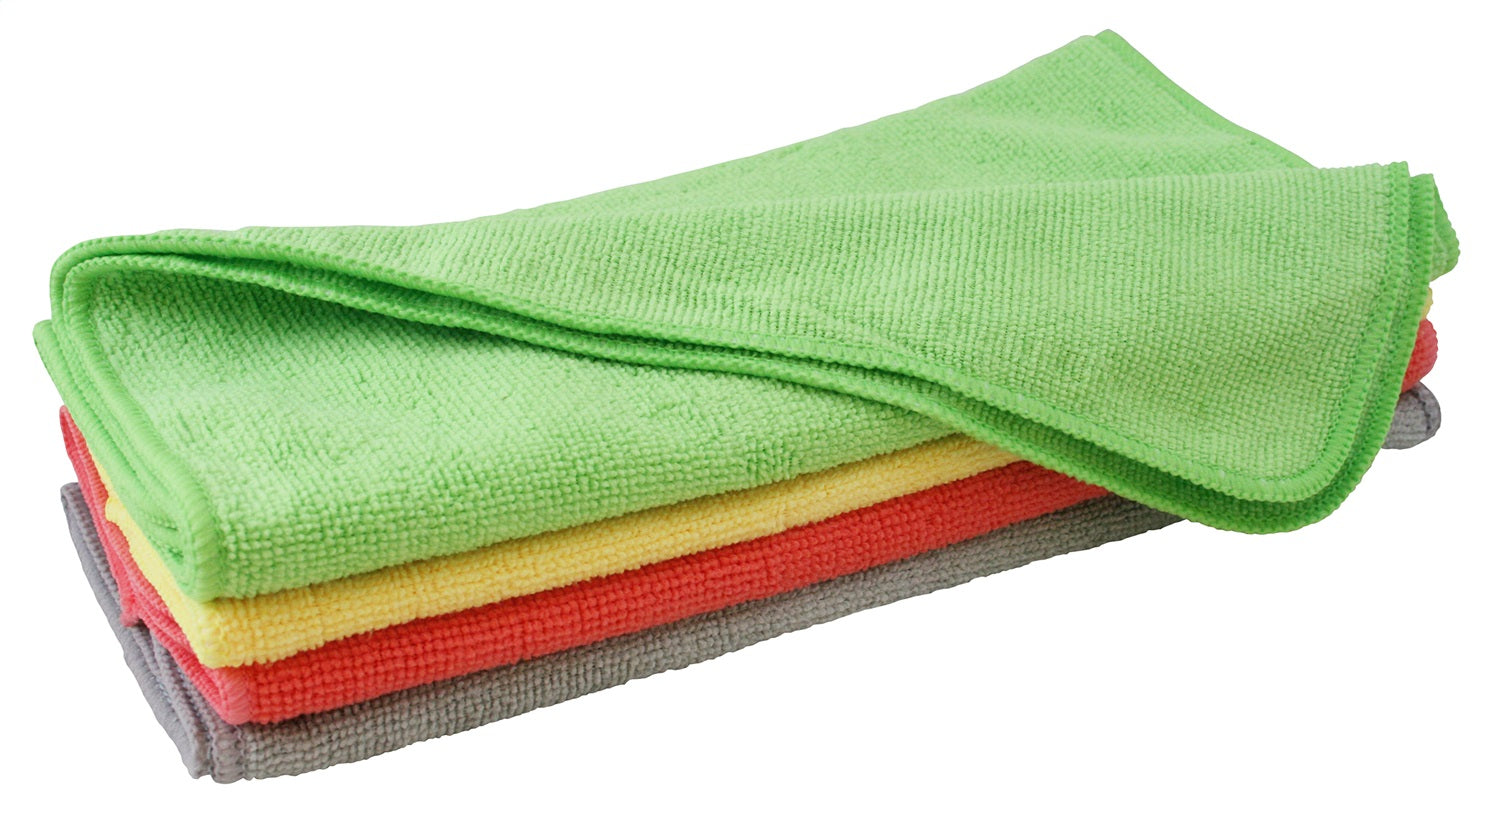 Carrand 40062 Microfiber Towels